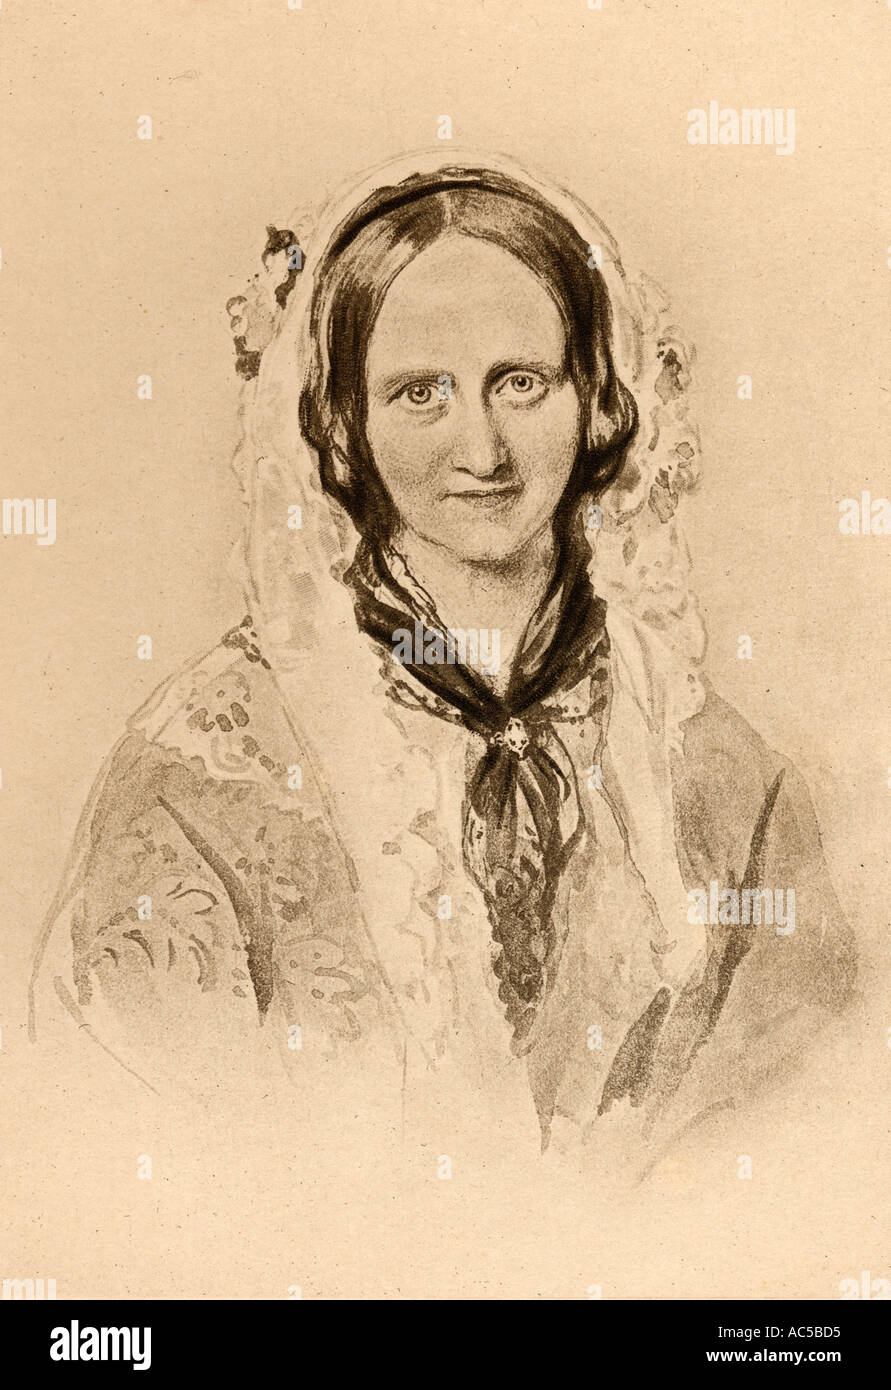 Adelaide von Sachsen-meiningen, die Dowager Queen, 1792 - 1849. Königin von Großbritannien als die Frau von Wilhelm IV. Stockfoto